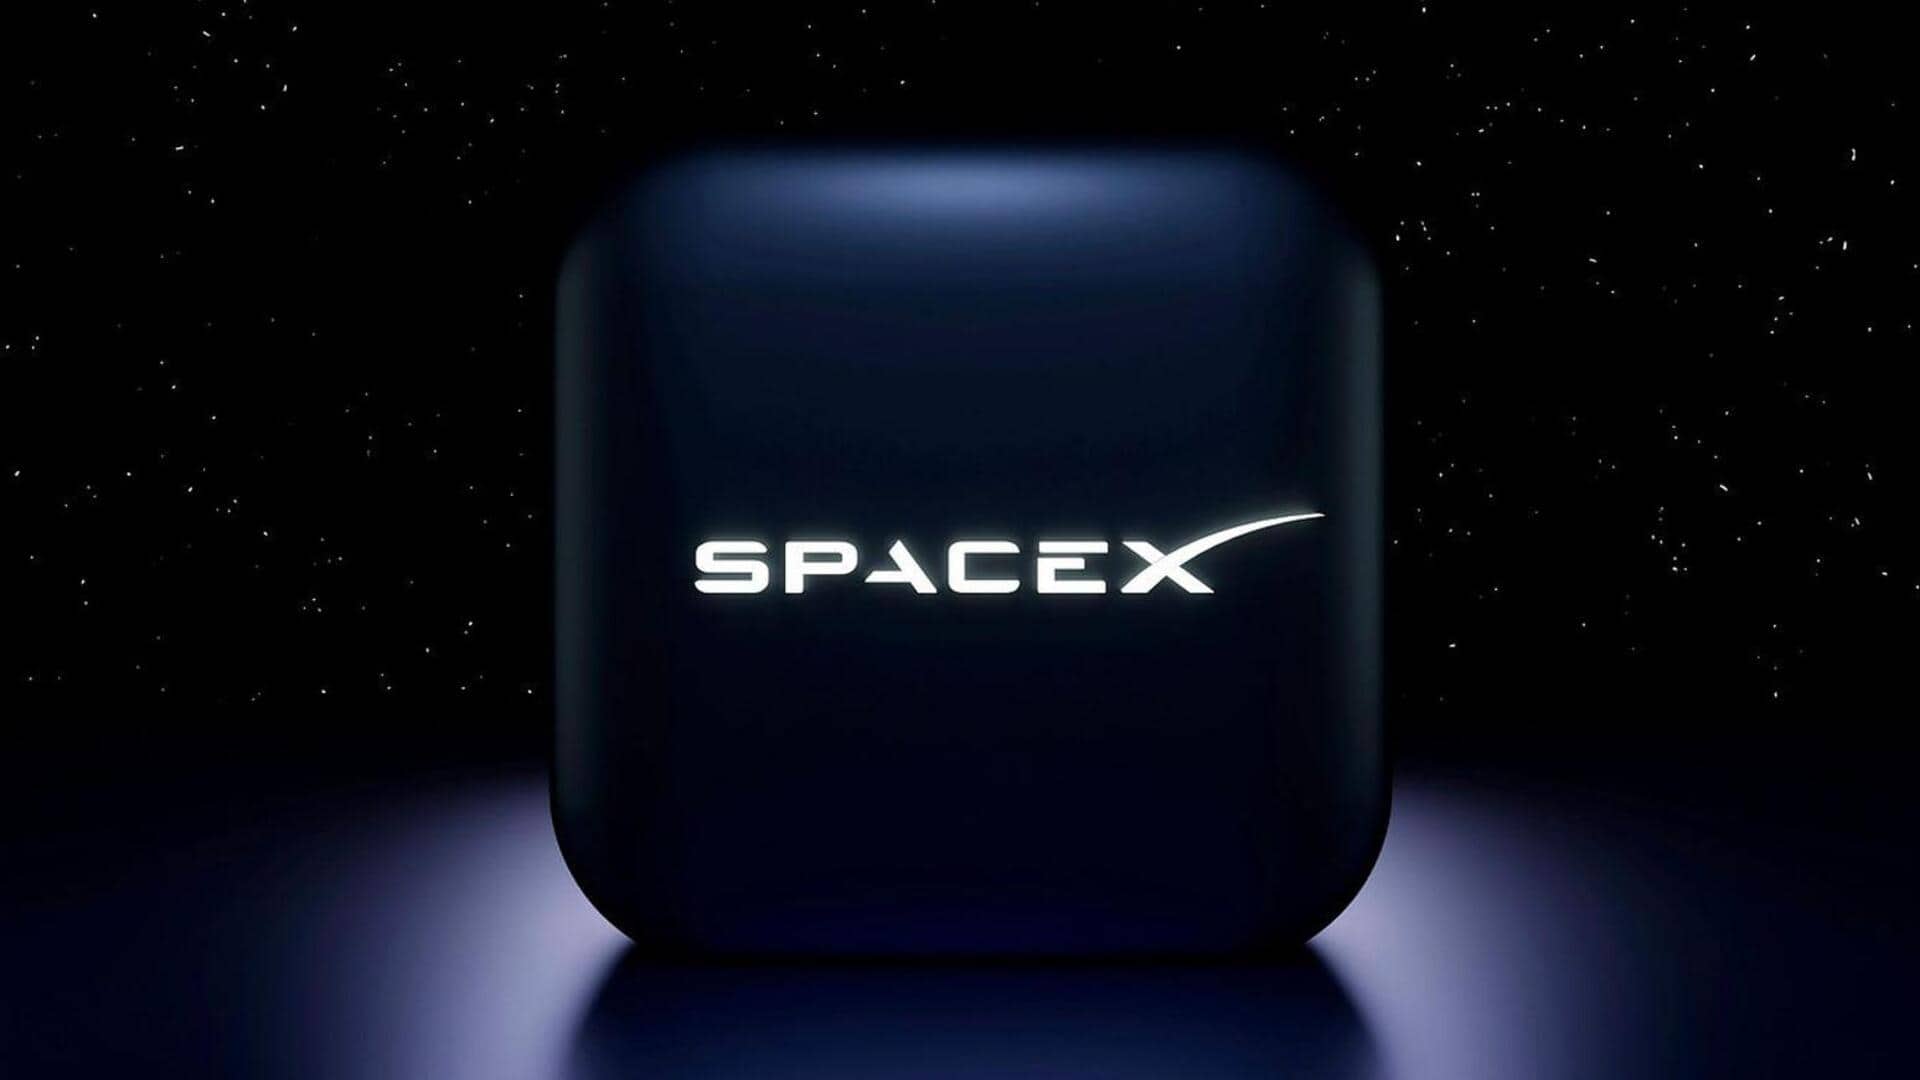 स्पेस-X पर गैरकानूनी तरीके से कर्मचारियों को निकालने का आरोप, अमेरिकी श्रम एजेंसी ने की शिकायत